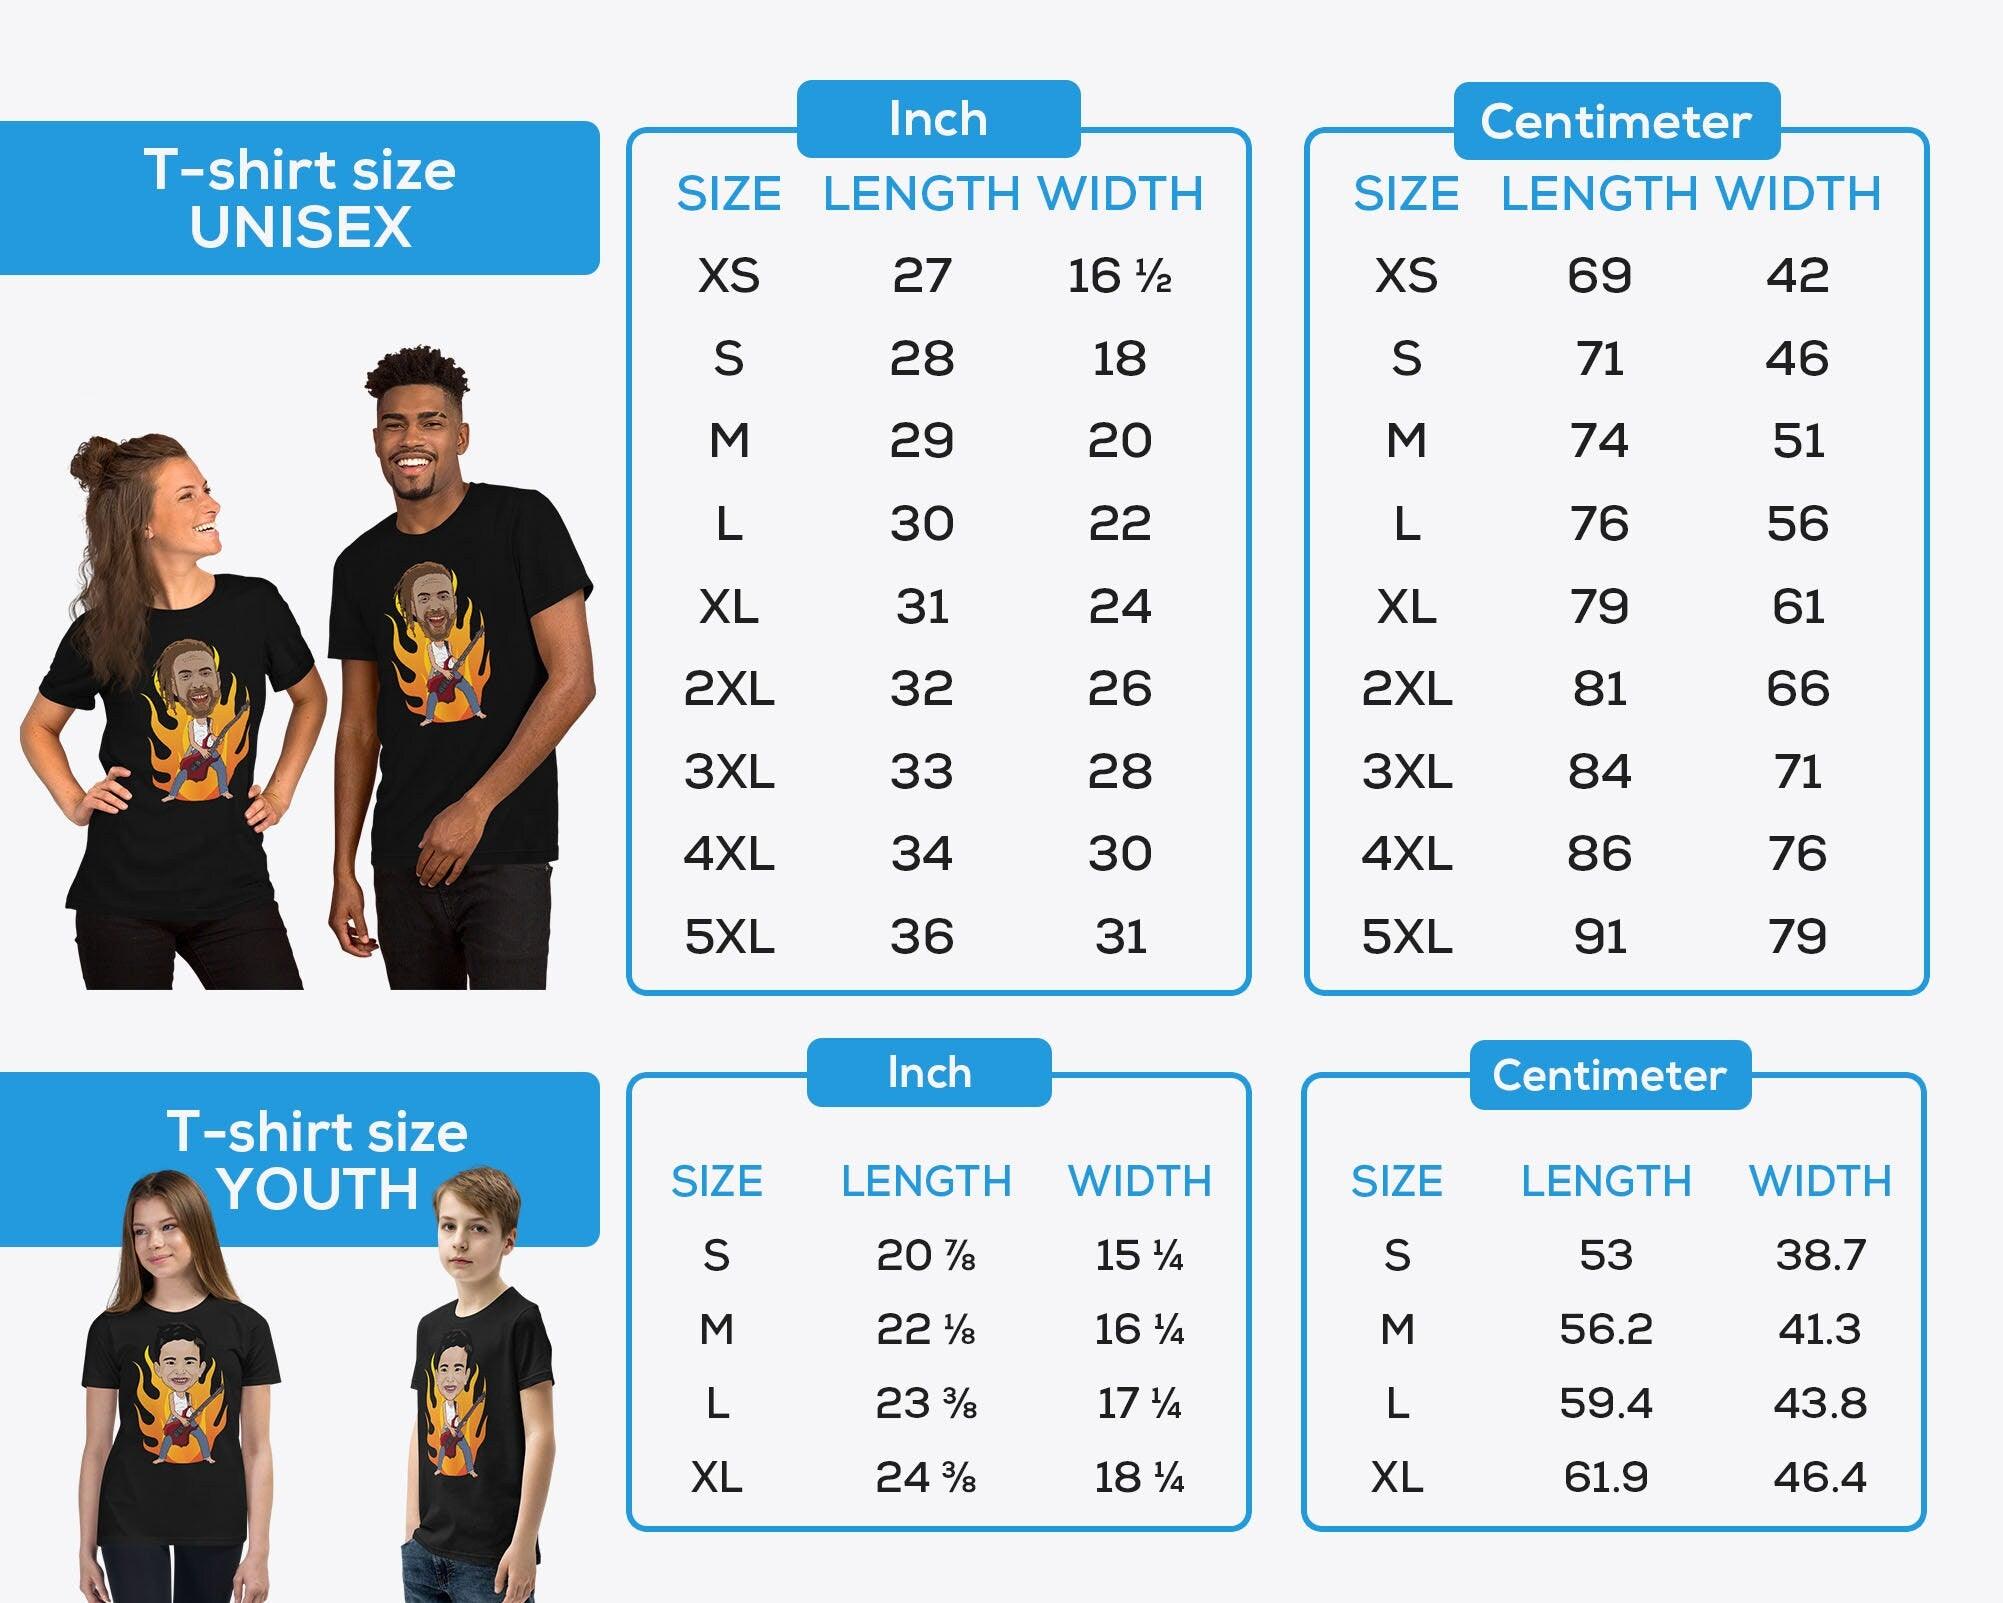 T-shirt Enfant Football Personnalisé - Votre Nom, Votre Numéro ! – Les  Drôles Shop